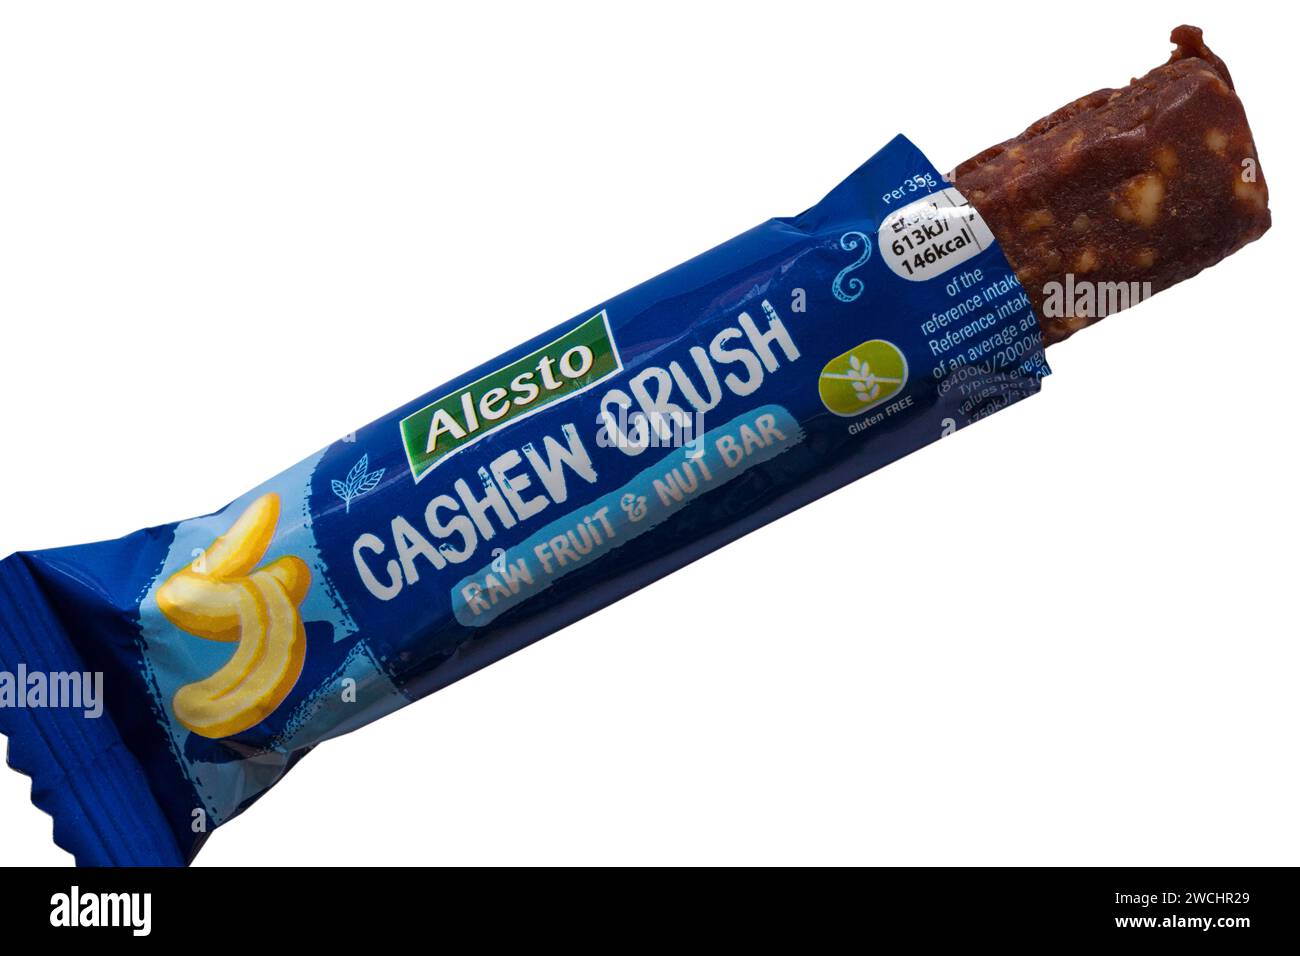 Alesto Cashew Crush Crue fruit & Nut bar de Lidl ouvert pour montrer le contenu réglé sur fond blanc Banque D'Images